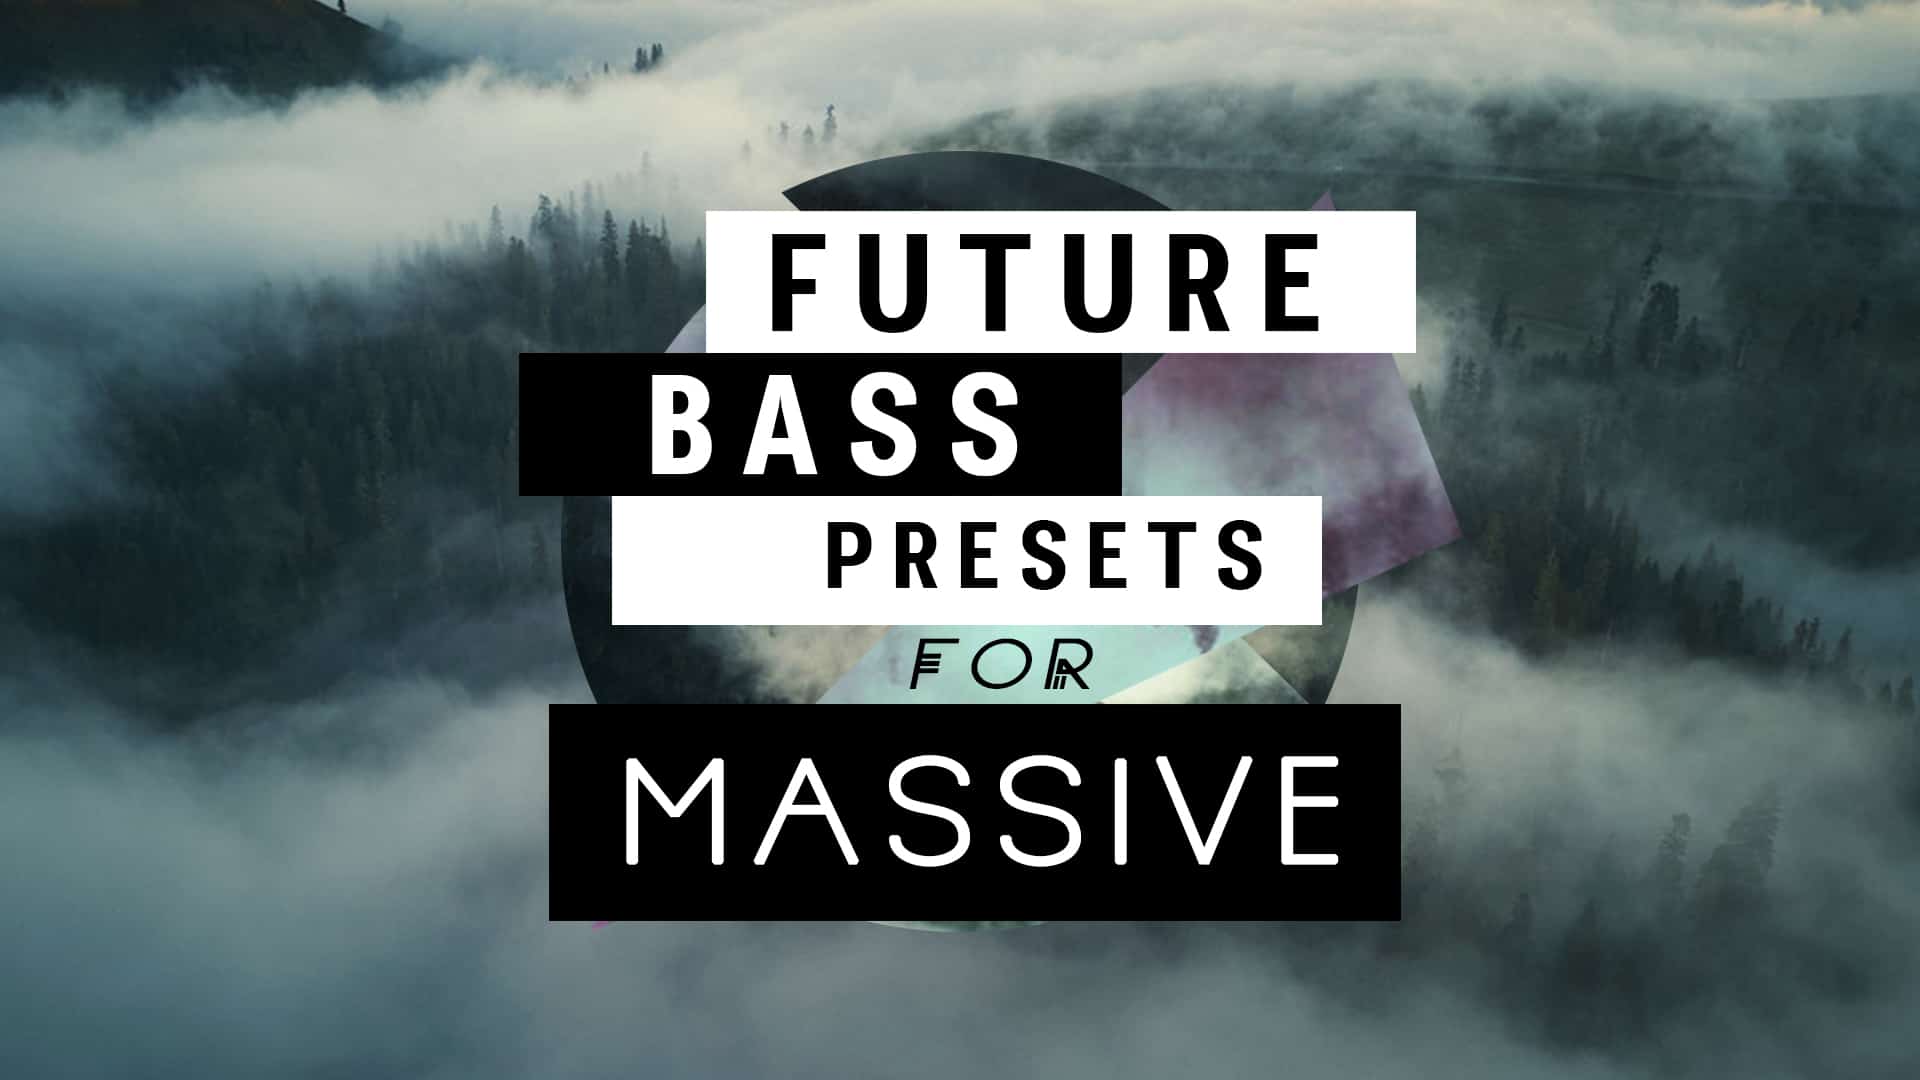 Presets for Future Bass in Massive.